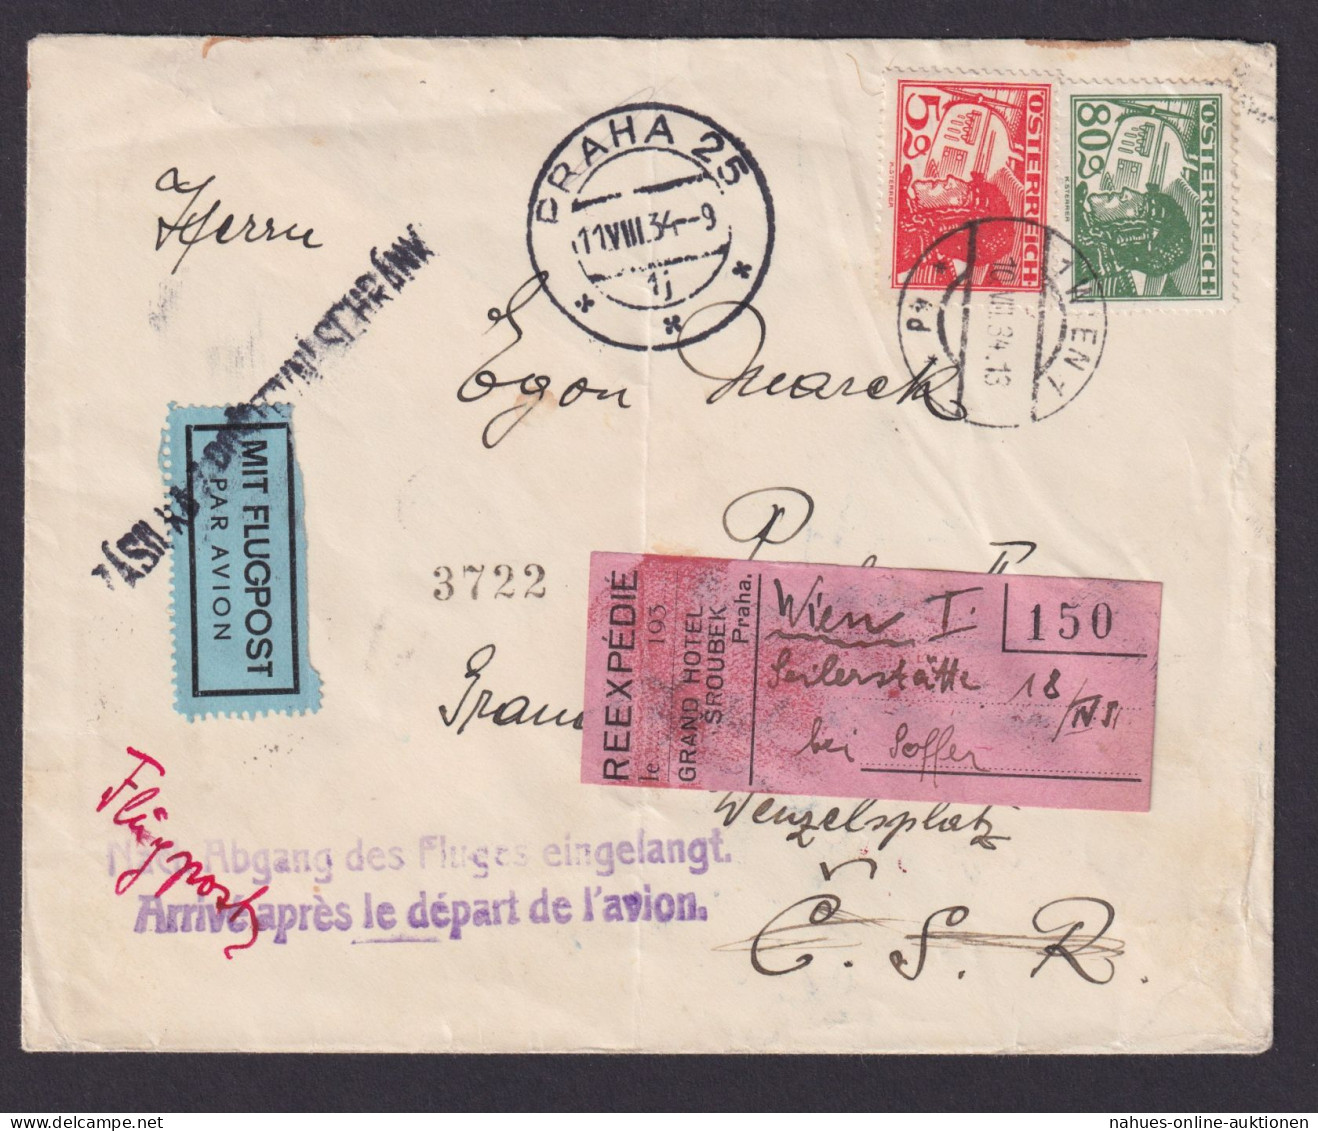 Flugpost Österreich Brief Wien Prag Viol. L2 Nach Abgang Des Fluges Eingelangt - Covers & Documents